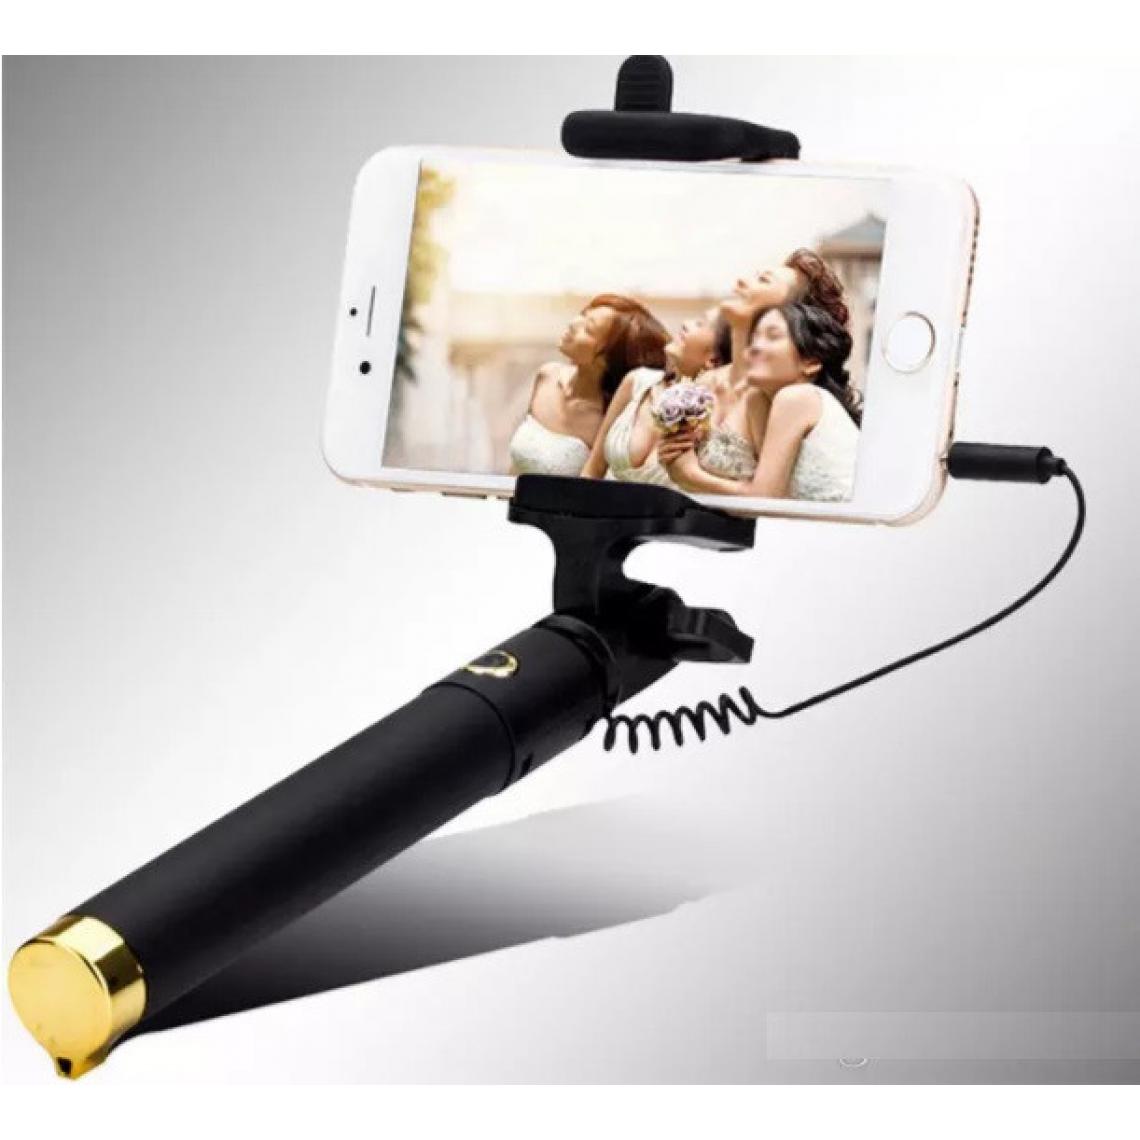 Shot - Perche Selfie Metal pour "Asus ZenFone 7 Pro" Smartphone avec Cable Jack Selfie Stick Android IOS Reglable Bouton Photo (OR) - Autres accessoires smartphone